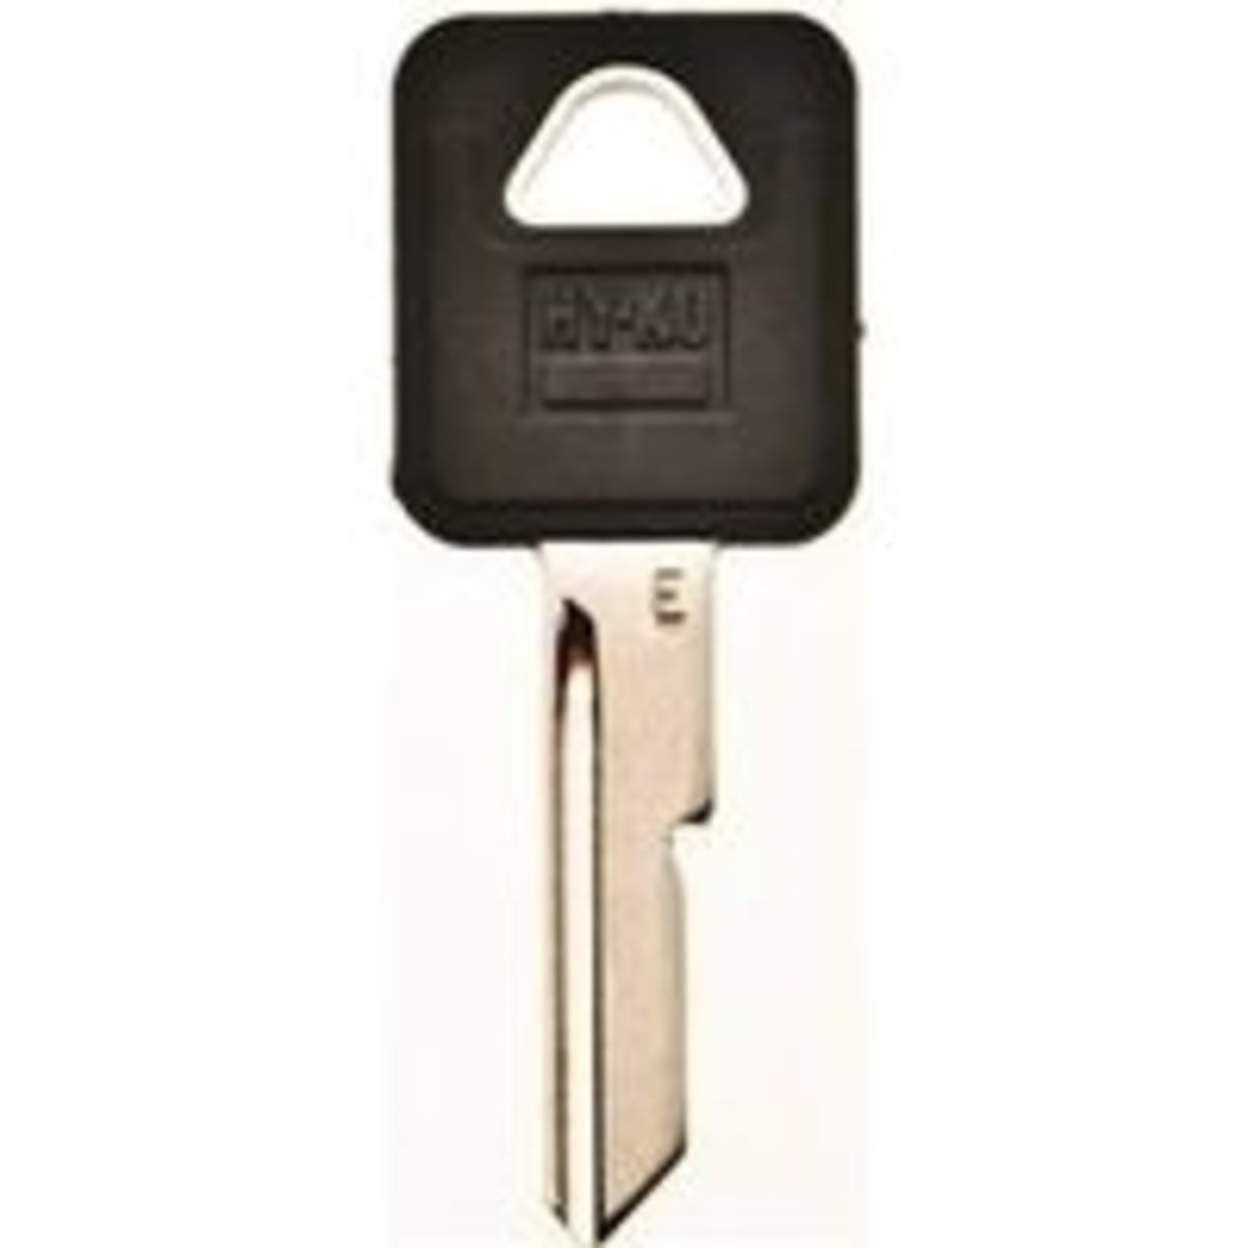 HY-KO Blank General Motors Rubber-head Key - B44, Black, 5 Pack